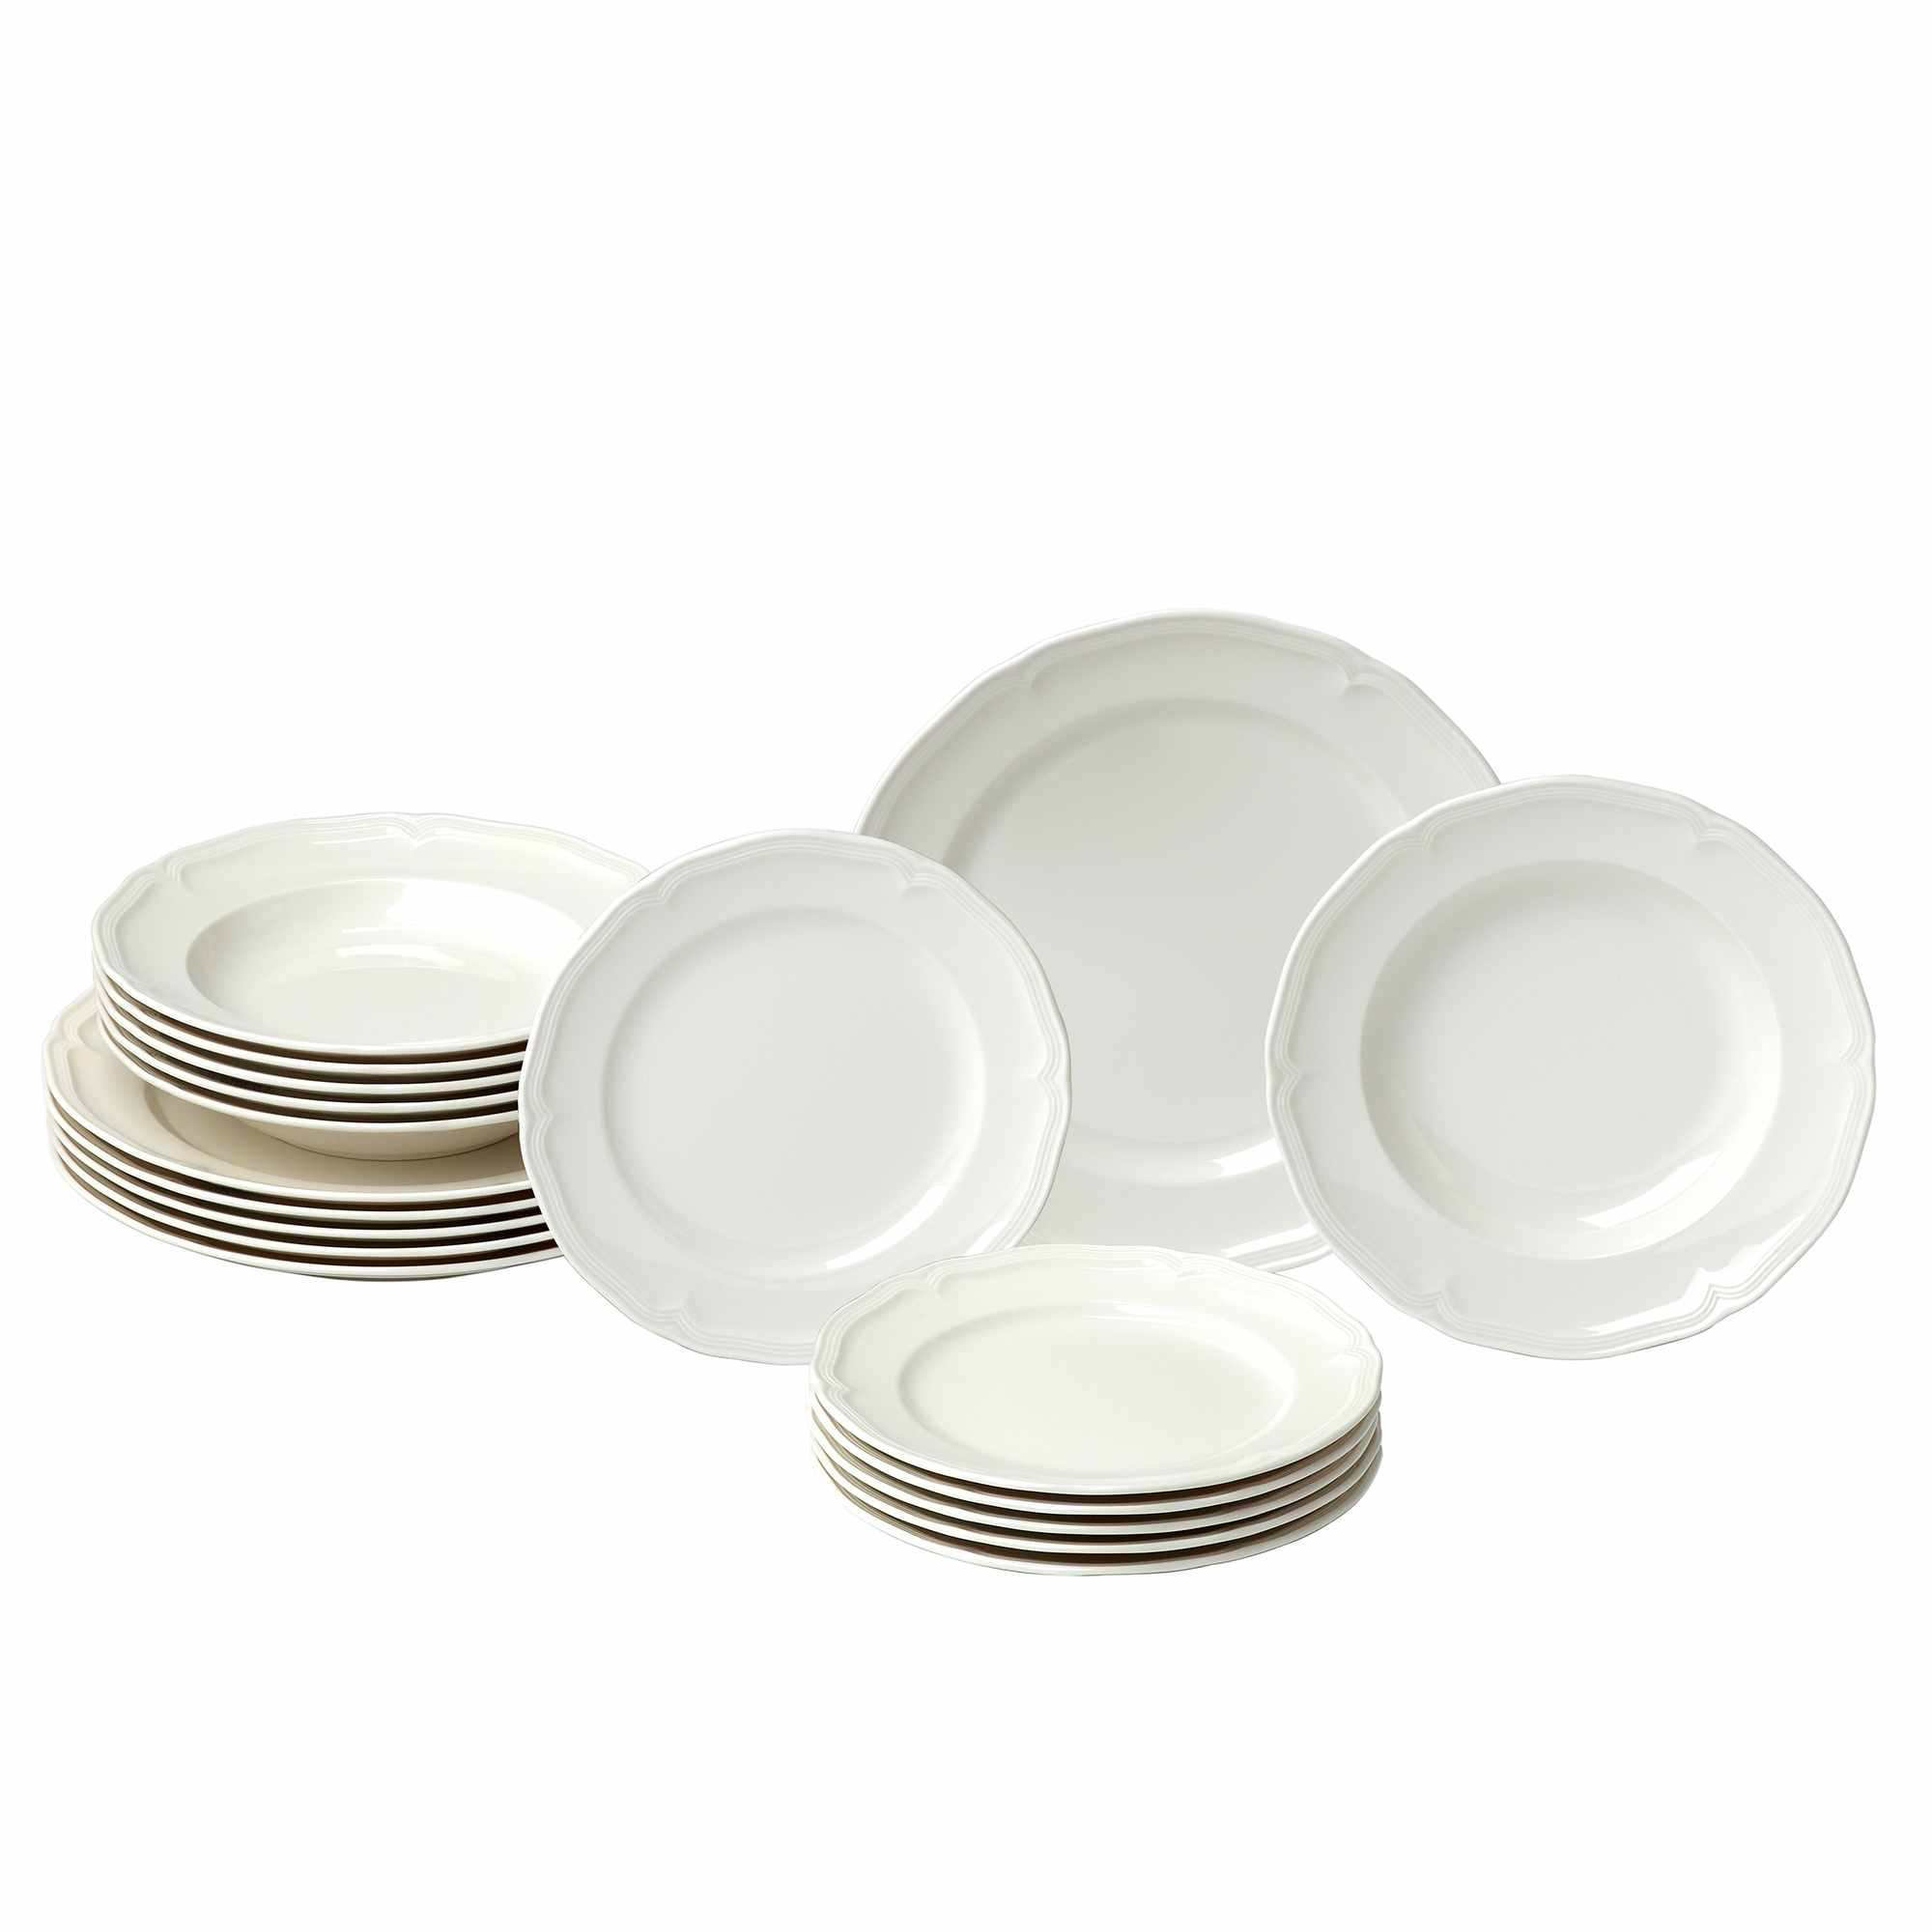 Villeroy & Boch - Dinnerware & Tableware